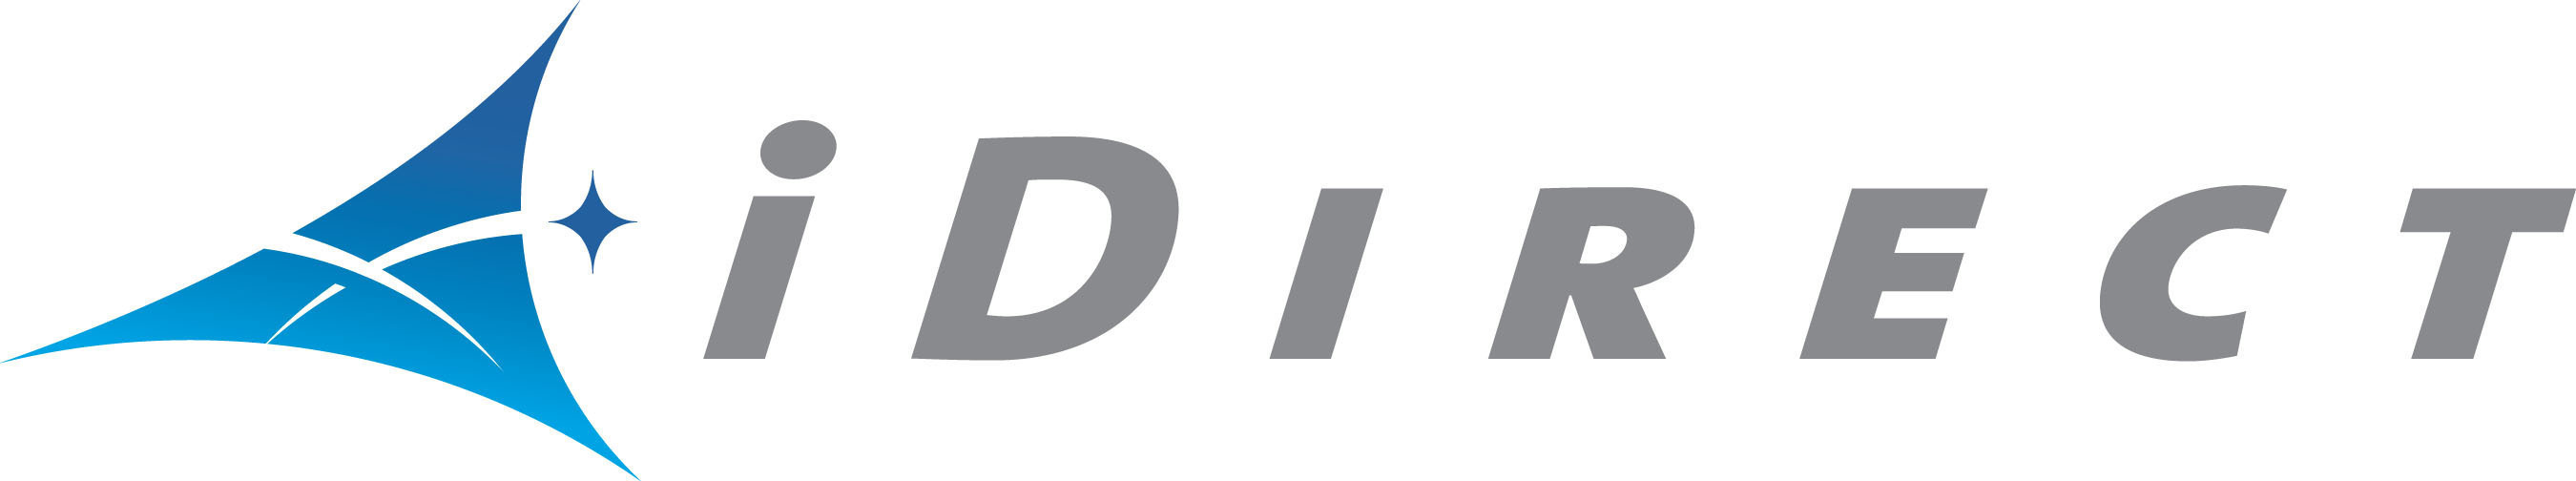 iDirect logo.